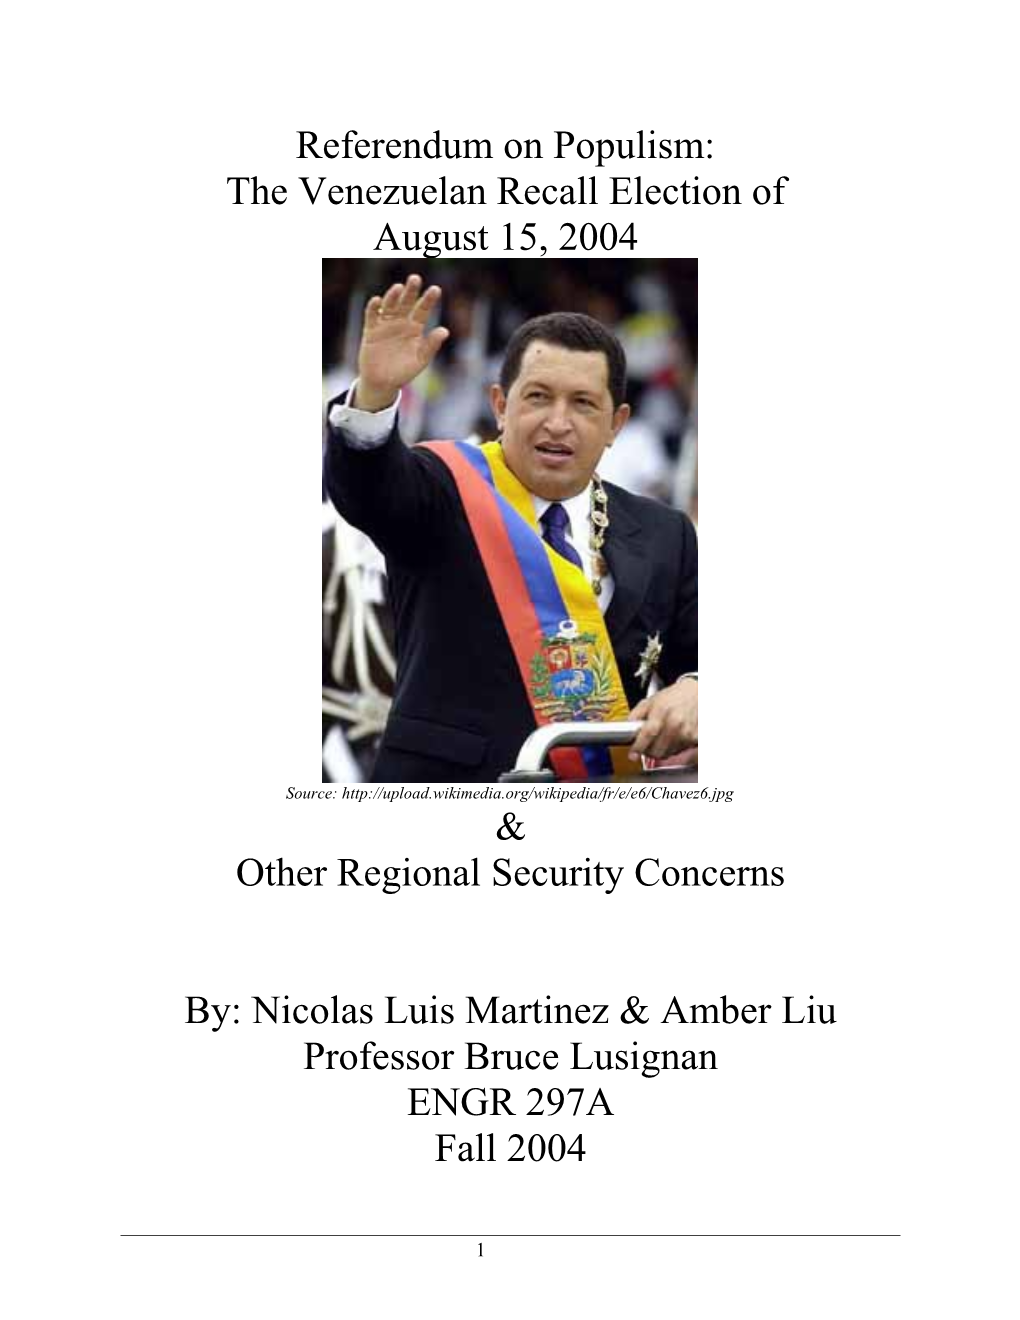 The Venezuelan Recall Election Of